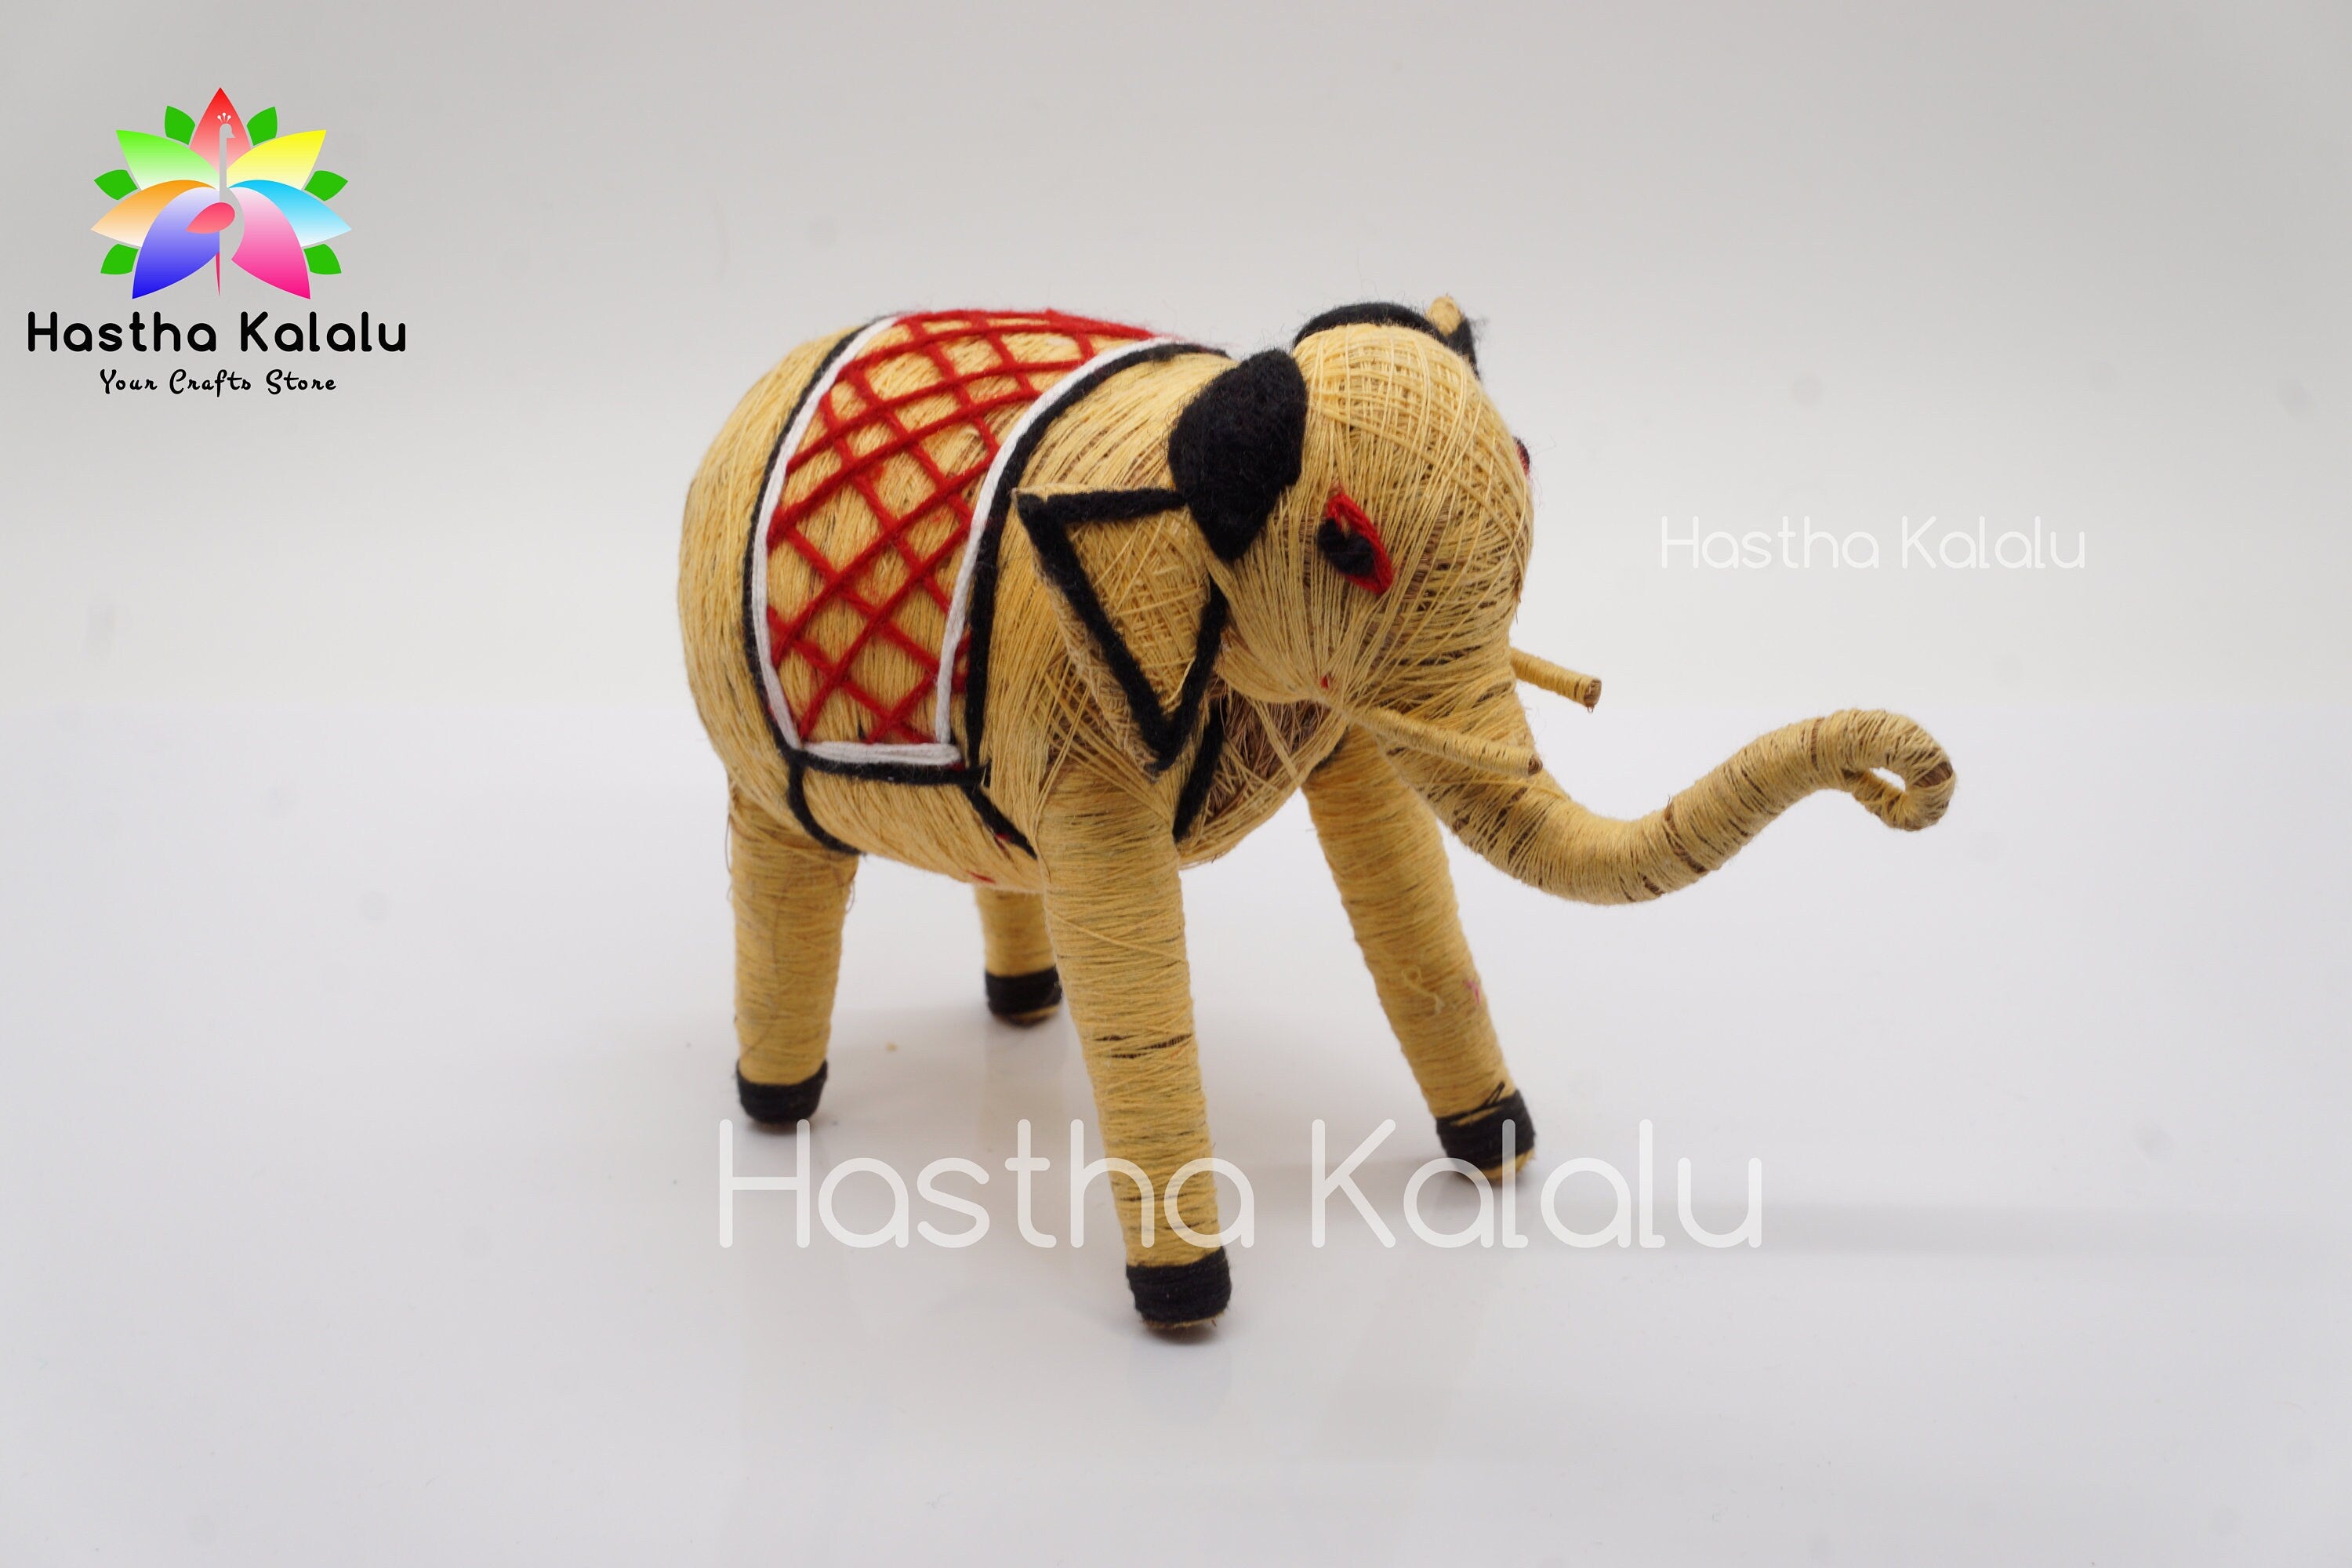 Handgefertigte Elefantenpuppe aus Kokosfaser | Kunsthandwerk aus Kokosfasern | Bio-umweltfreundliches Elefantenspielzeug